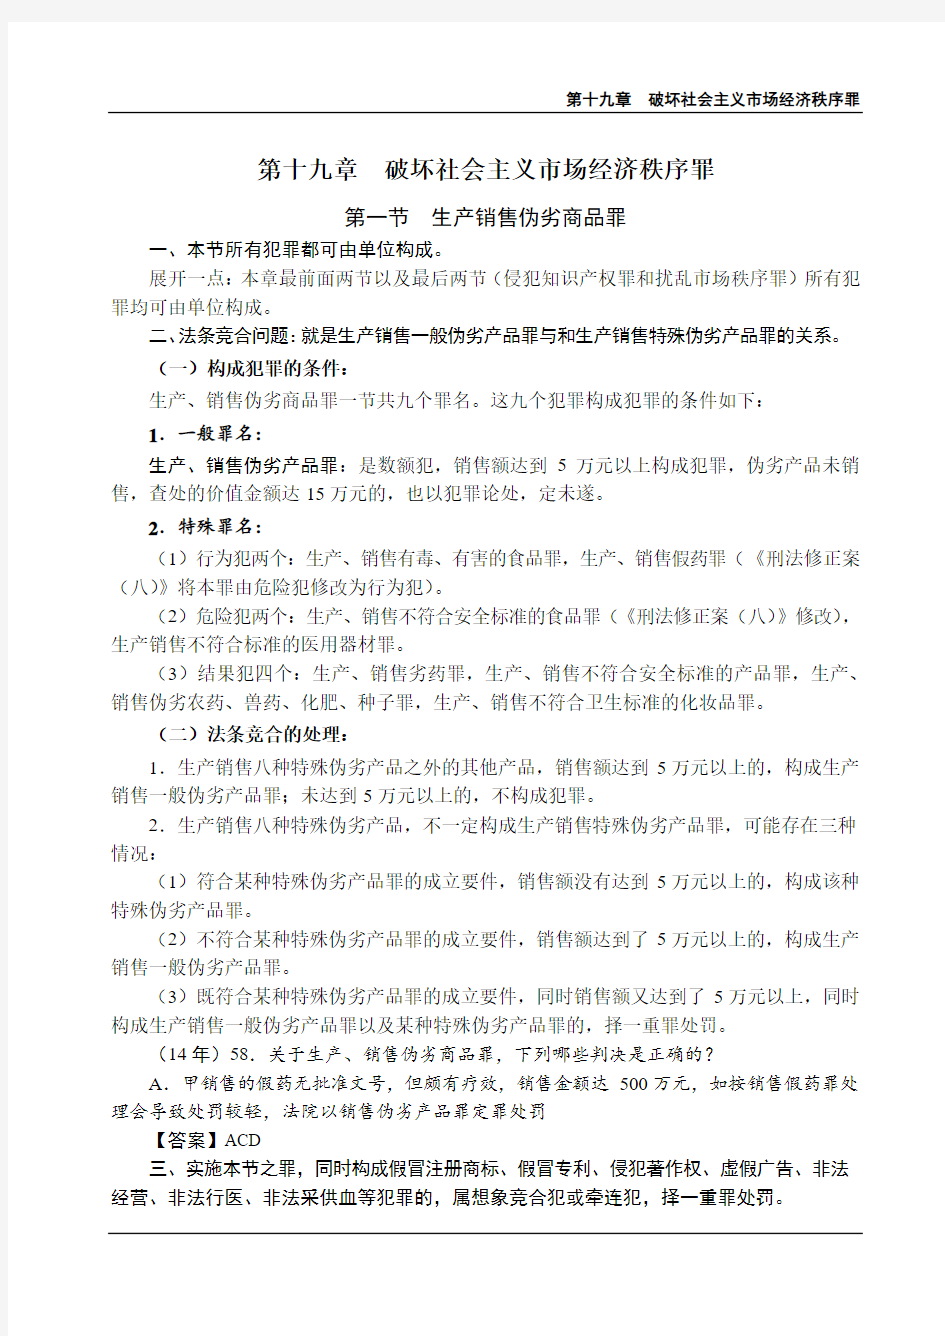 2019强化讲义刑法-第23节-破坏社会主义市场经济秩序罪(1)-陈永生